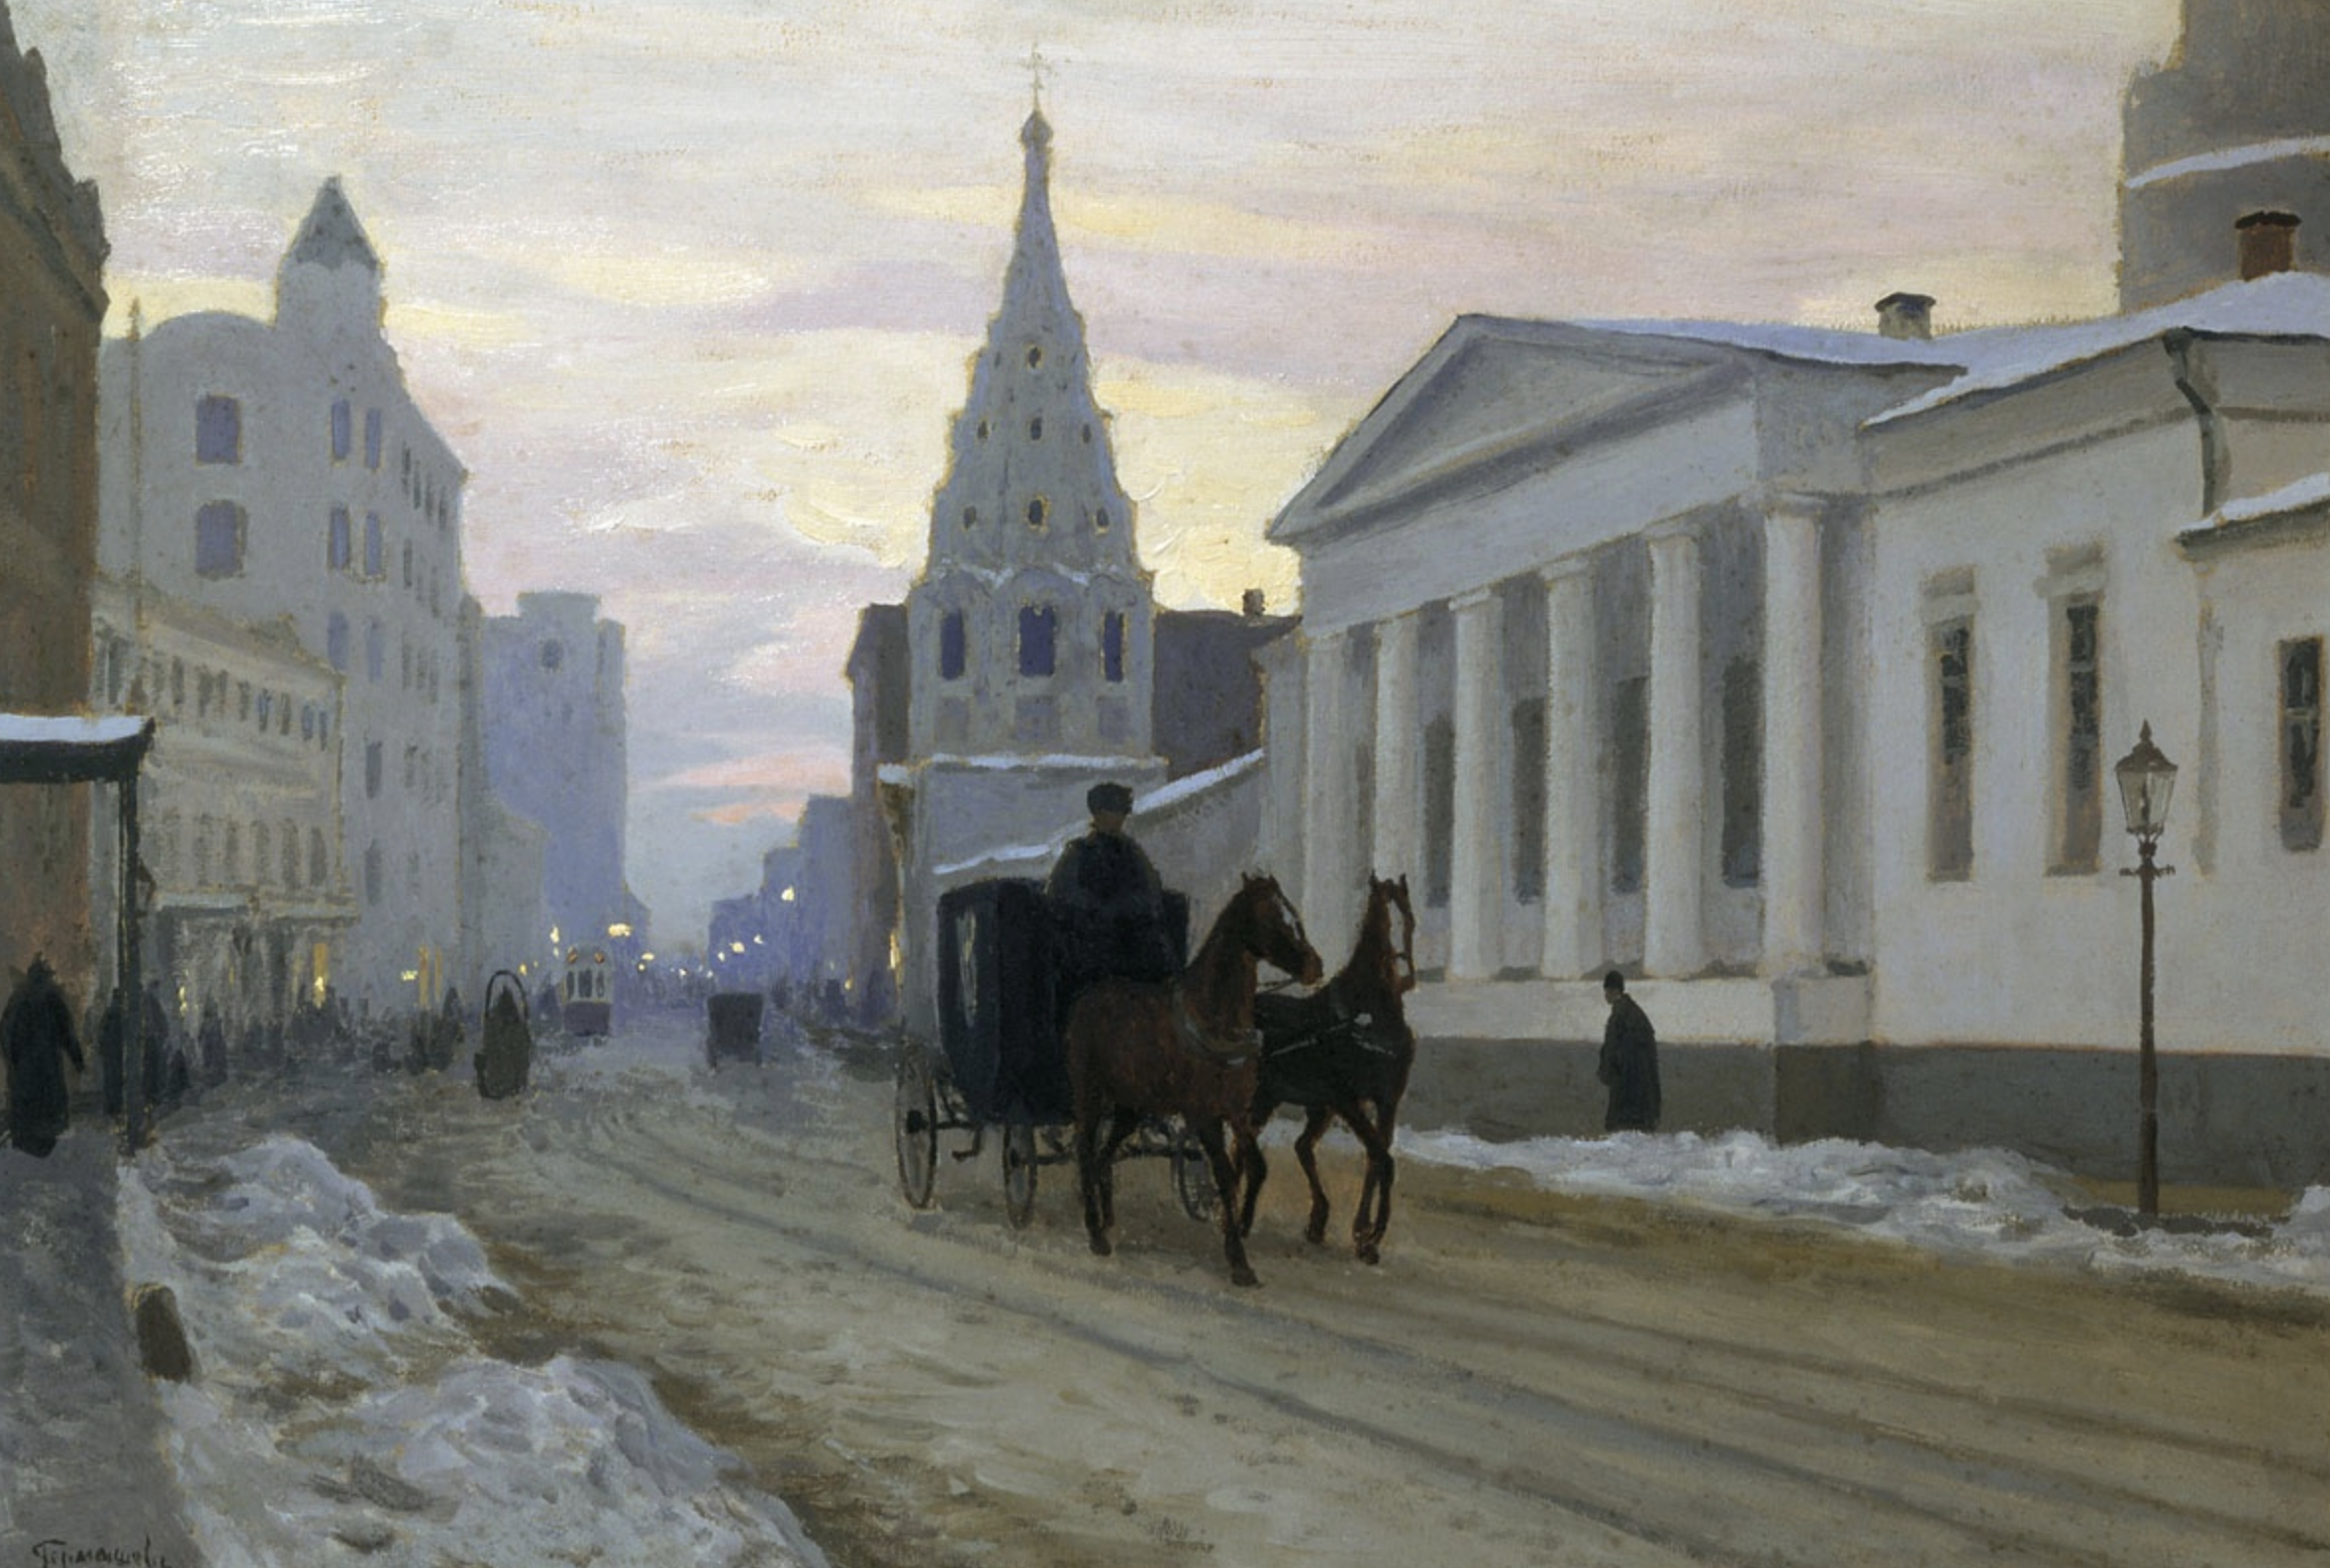 Живопись начала 20 века в россии